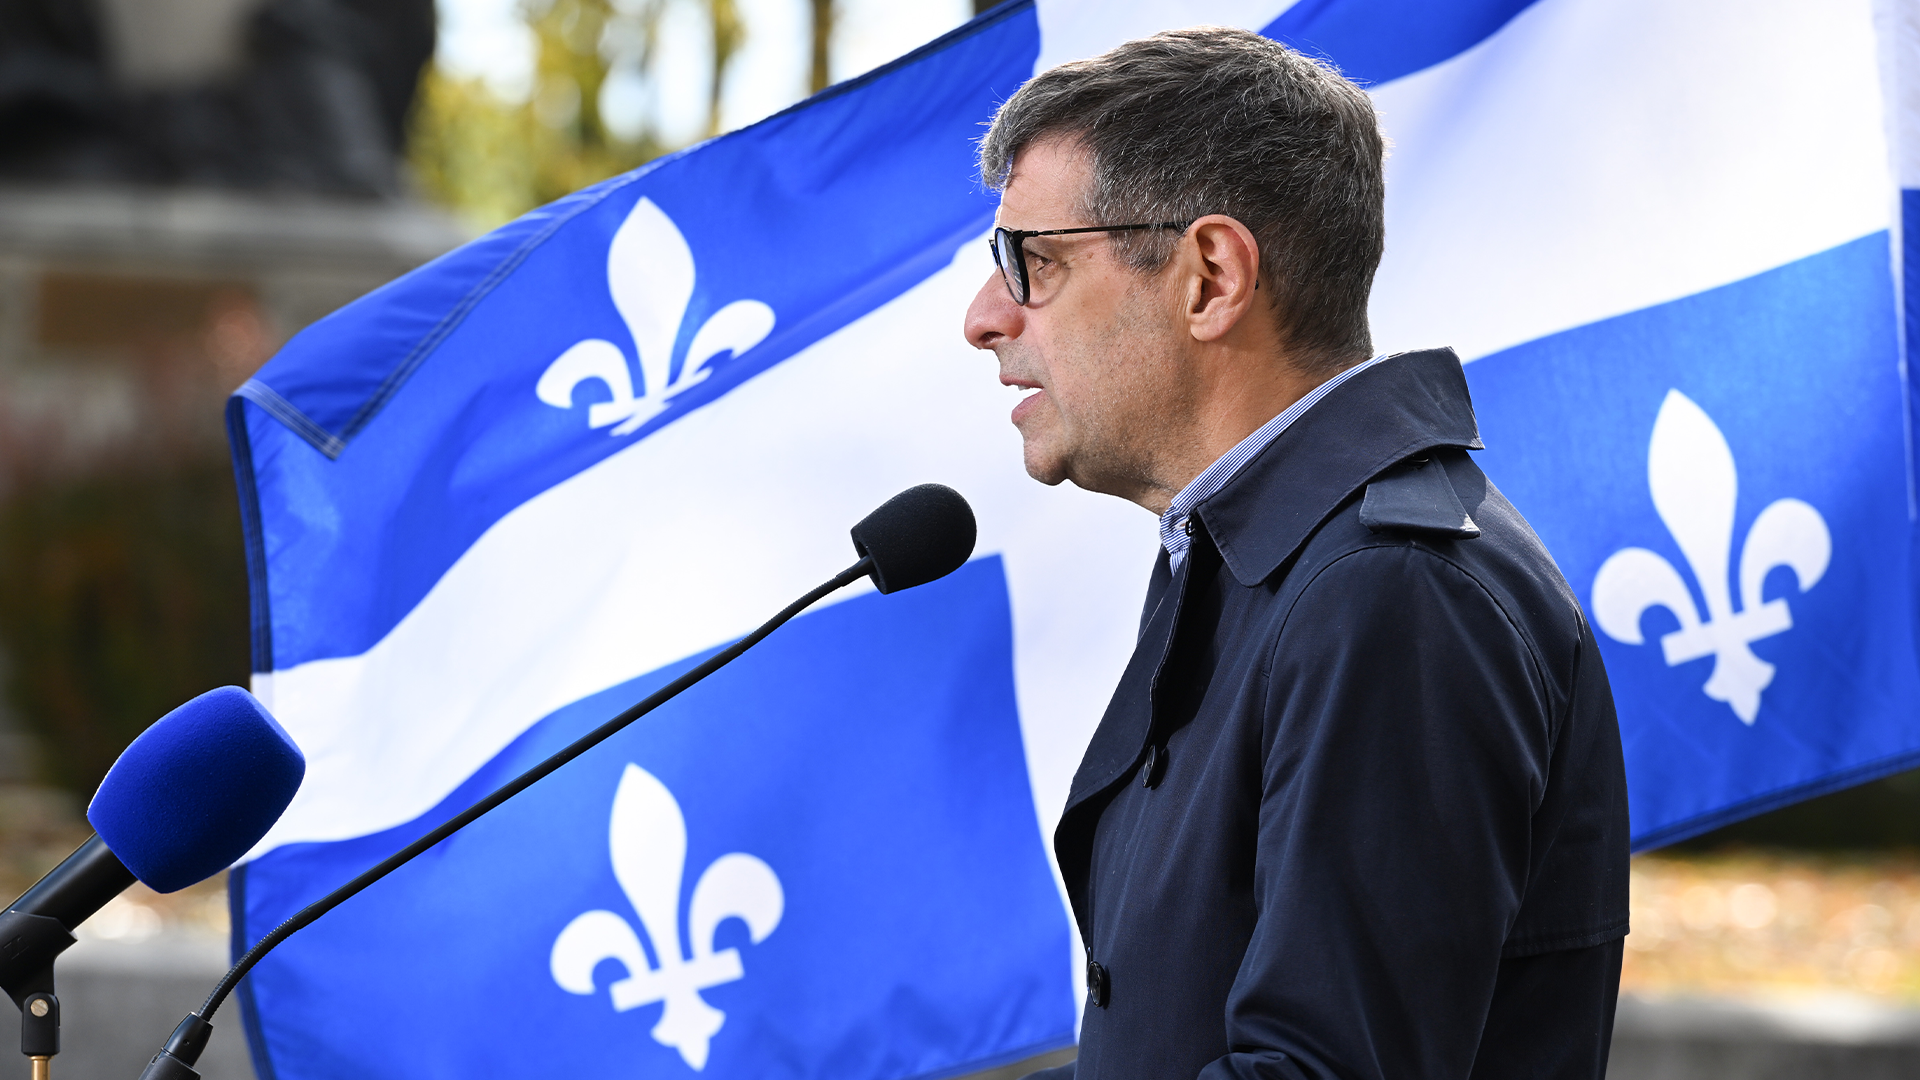 Le Parti conservateur du Québec (PCQ) a l'ambition de se «professionnaliser» dans les quatre années à venir, a déclaré samedi son chef Éric Duhaime, ajoutant que ce travail ne faisait que commencer.